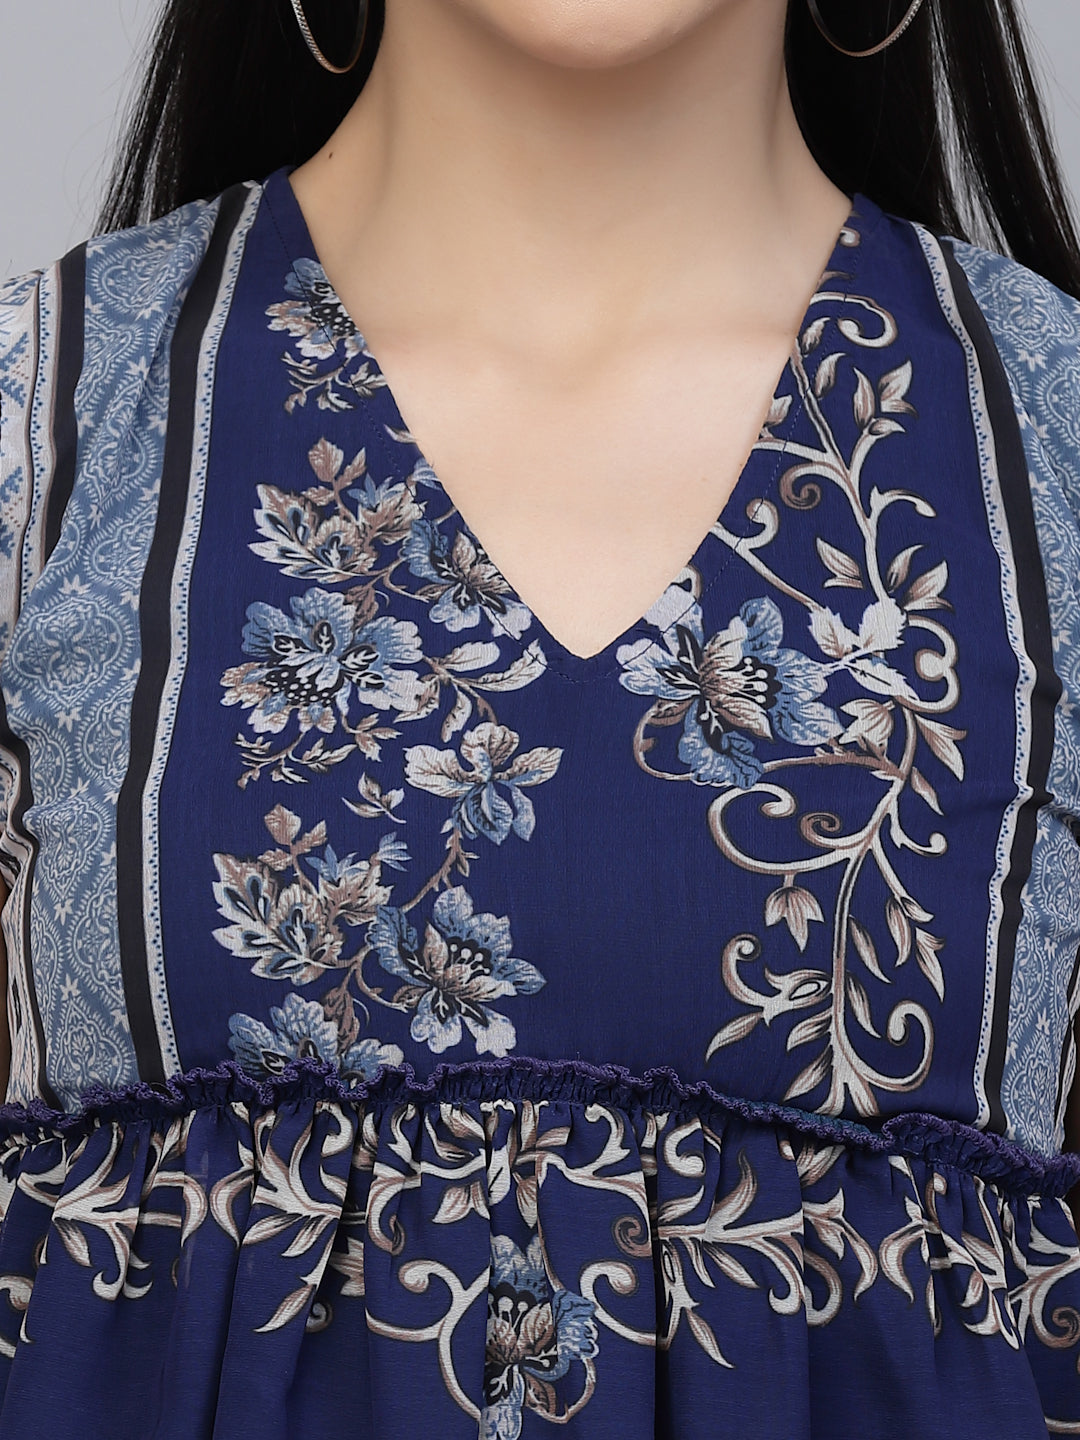 Valbone Women’s Blue Georgette Floral Print Top